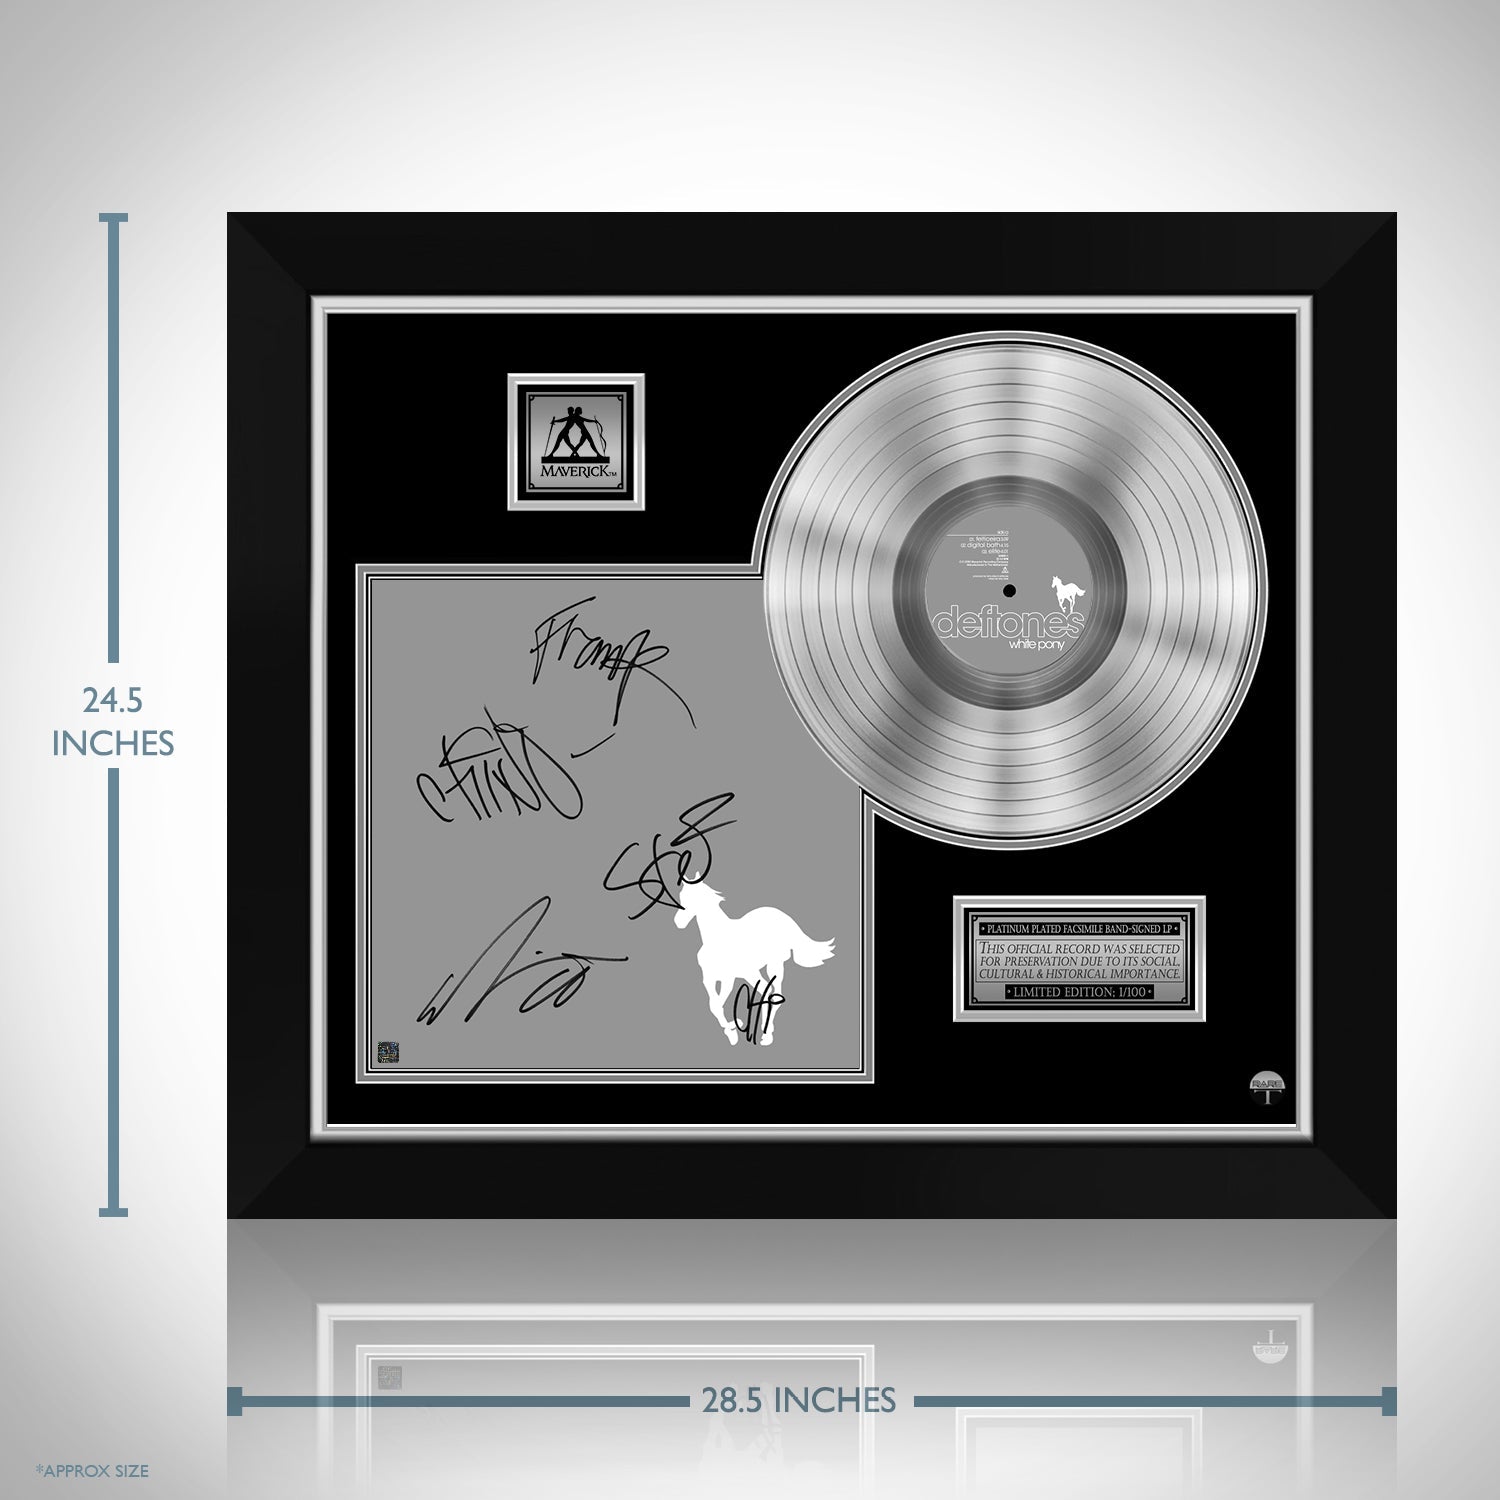 Deftones - White Pony Platinum LP Limited Signature Edition 